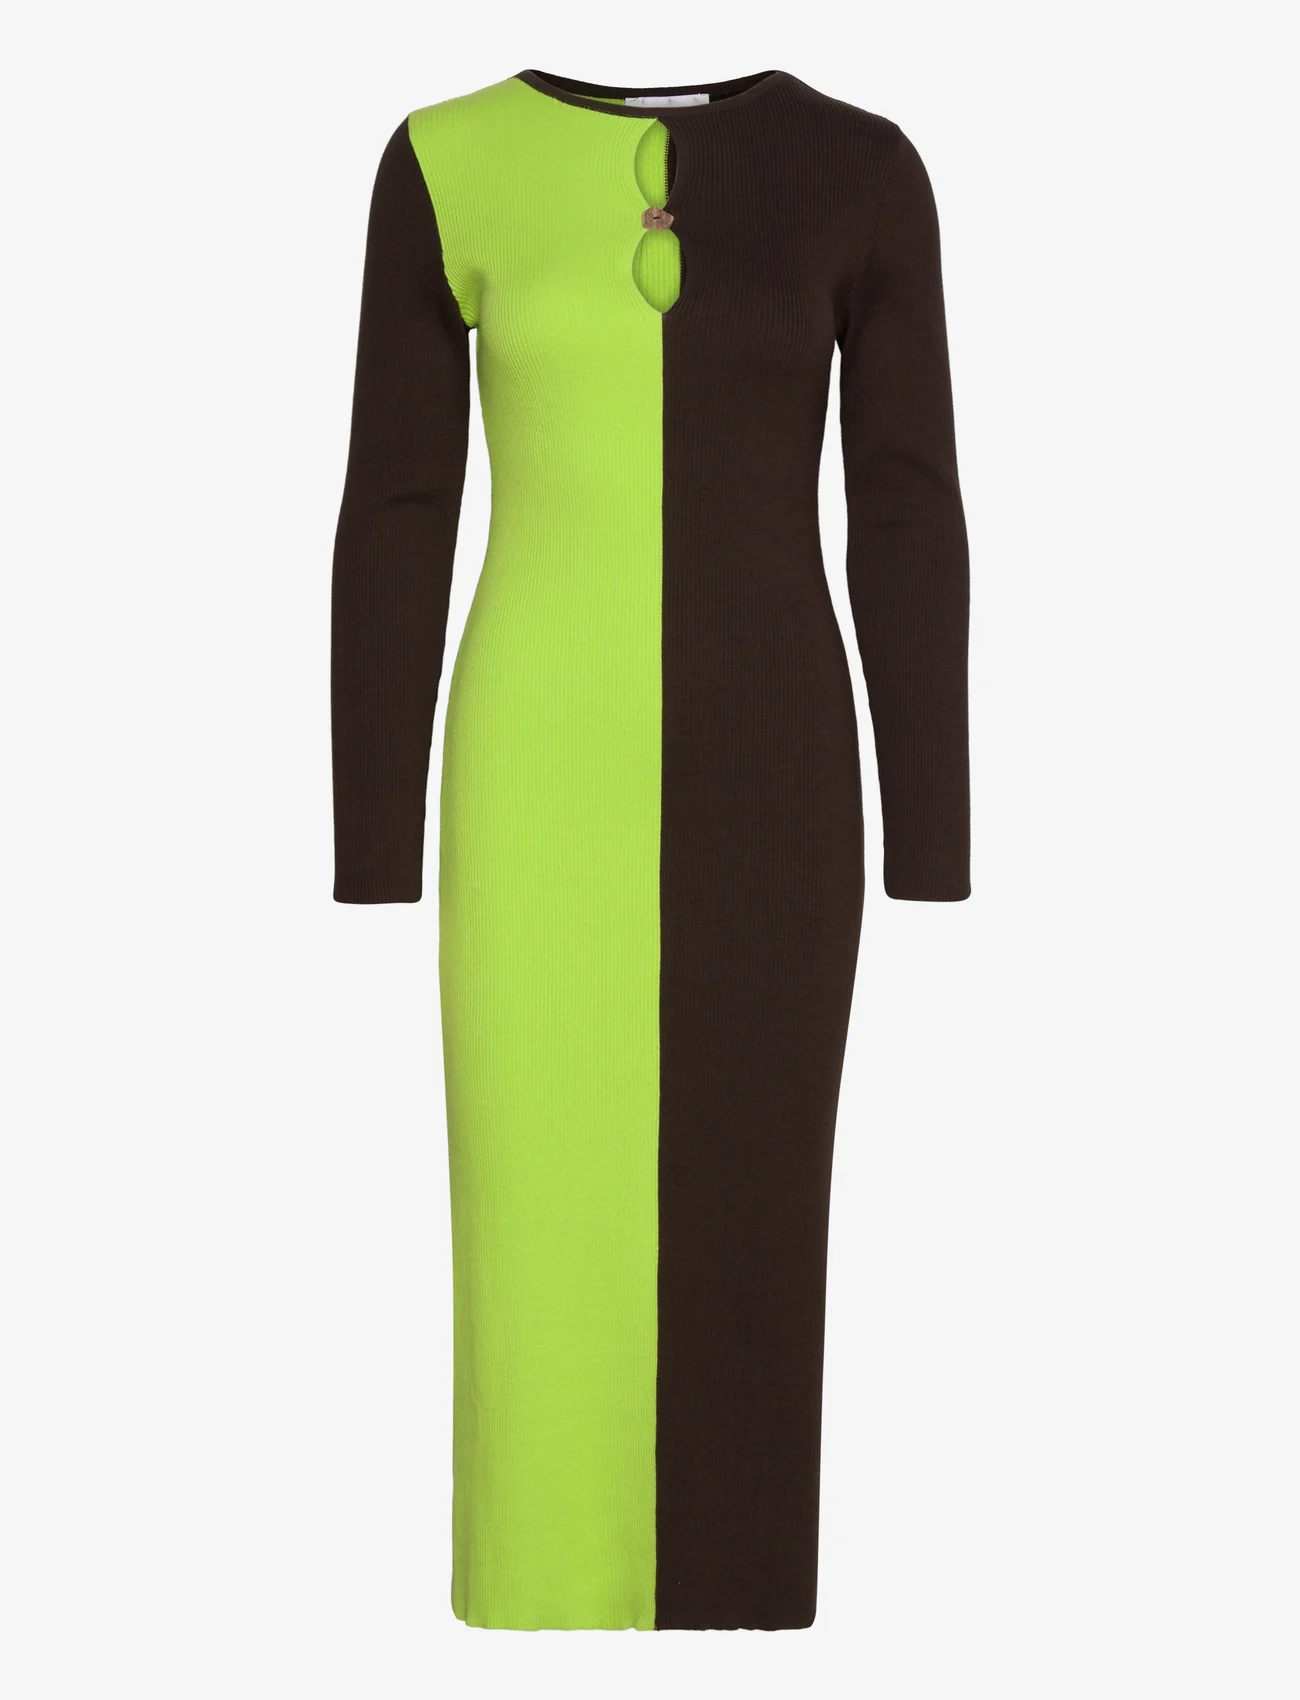 Hosbjerg - Joa Knit Dress - etuikleider - brown/green - 0